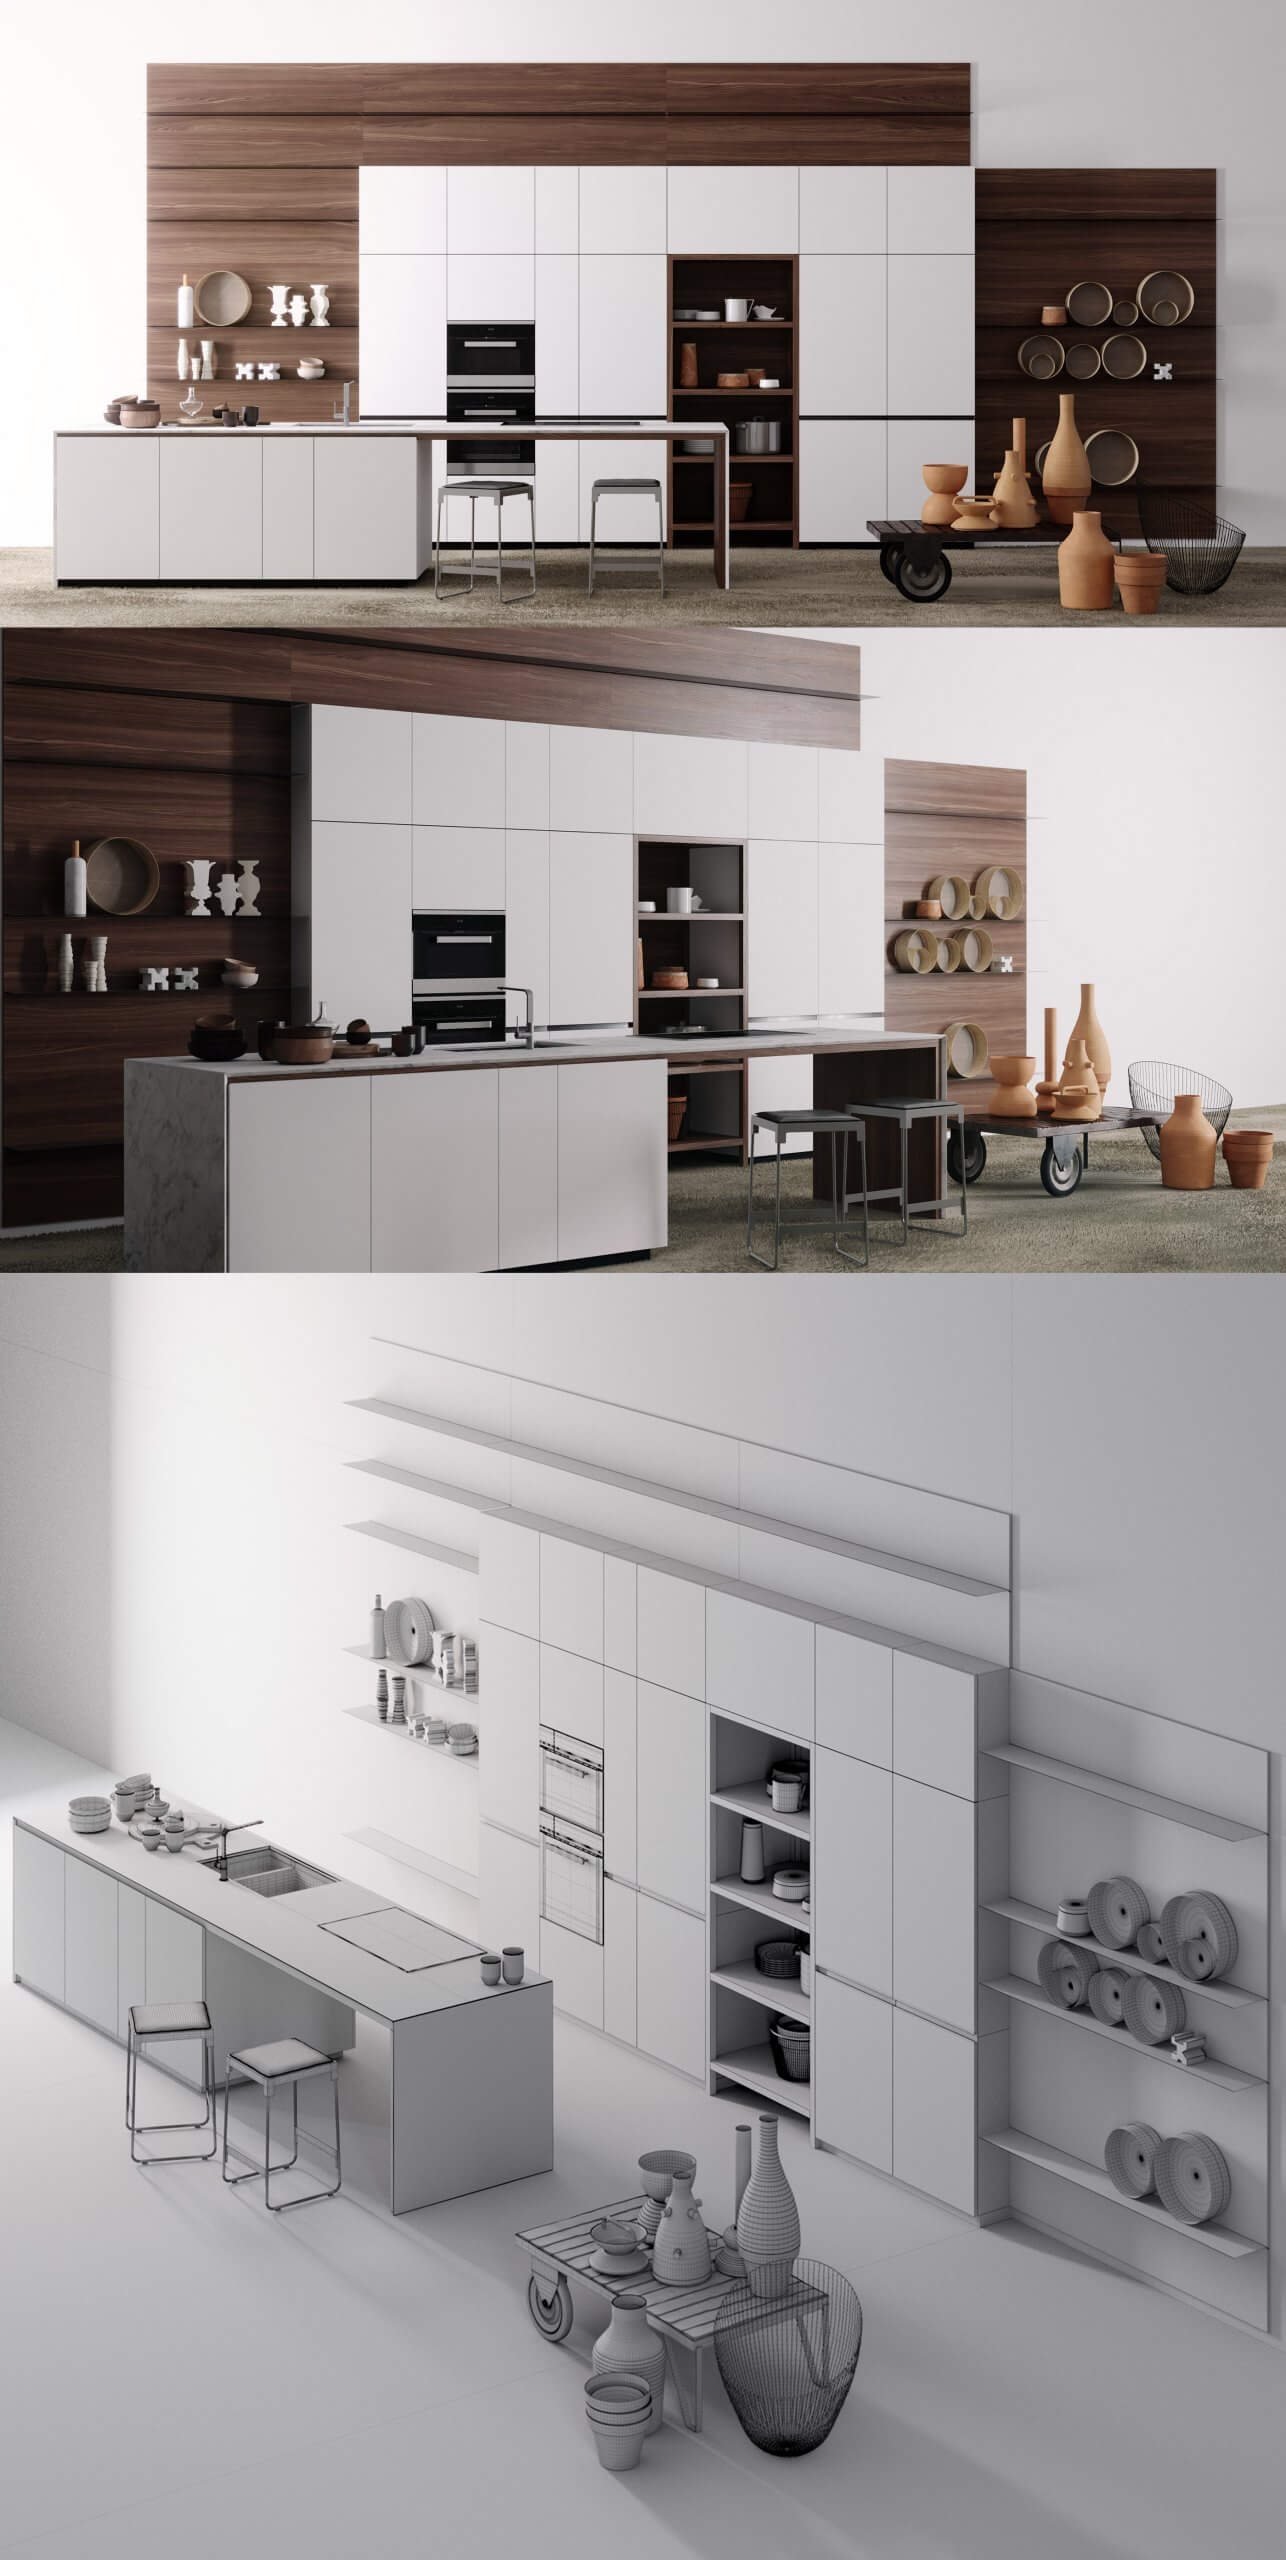 Valcucine厨房设计厨房内部场景3D模型（OBJ,FBX,MAX）